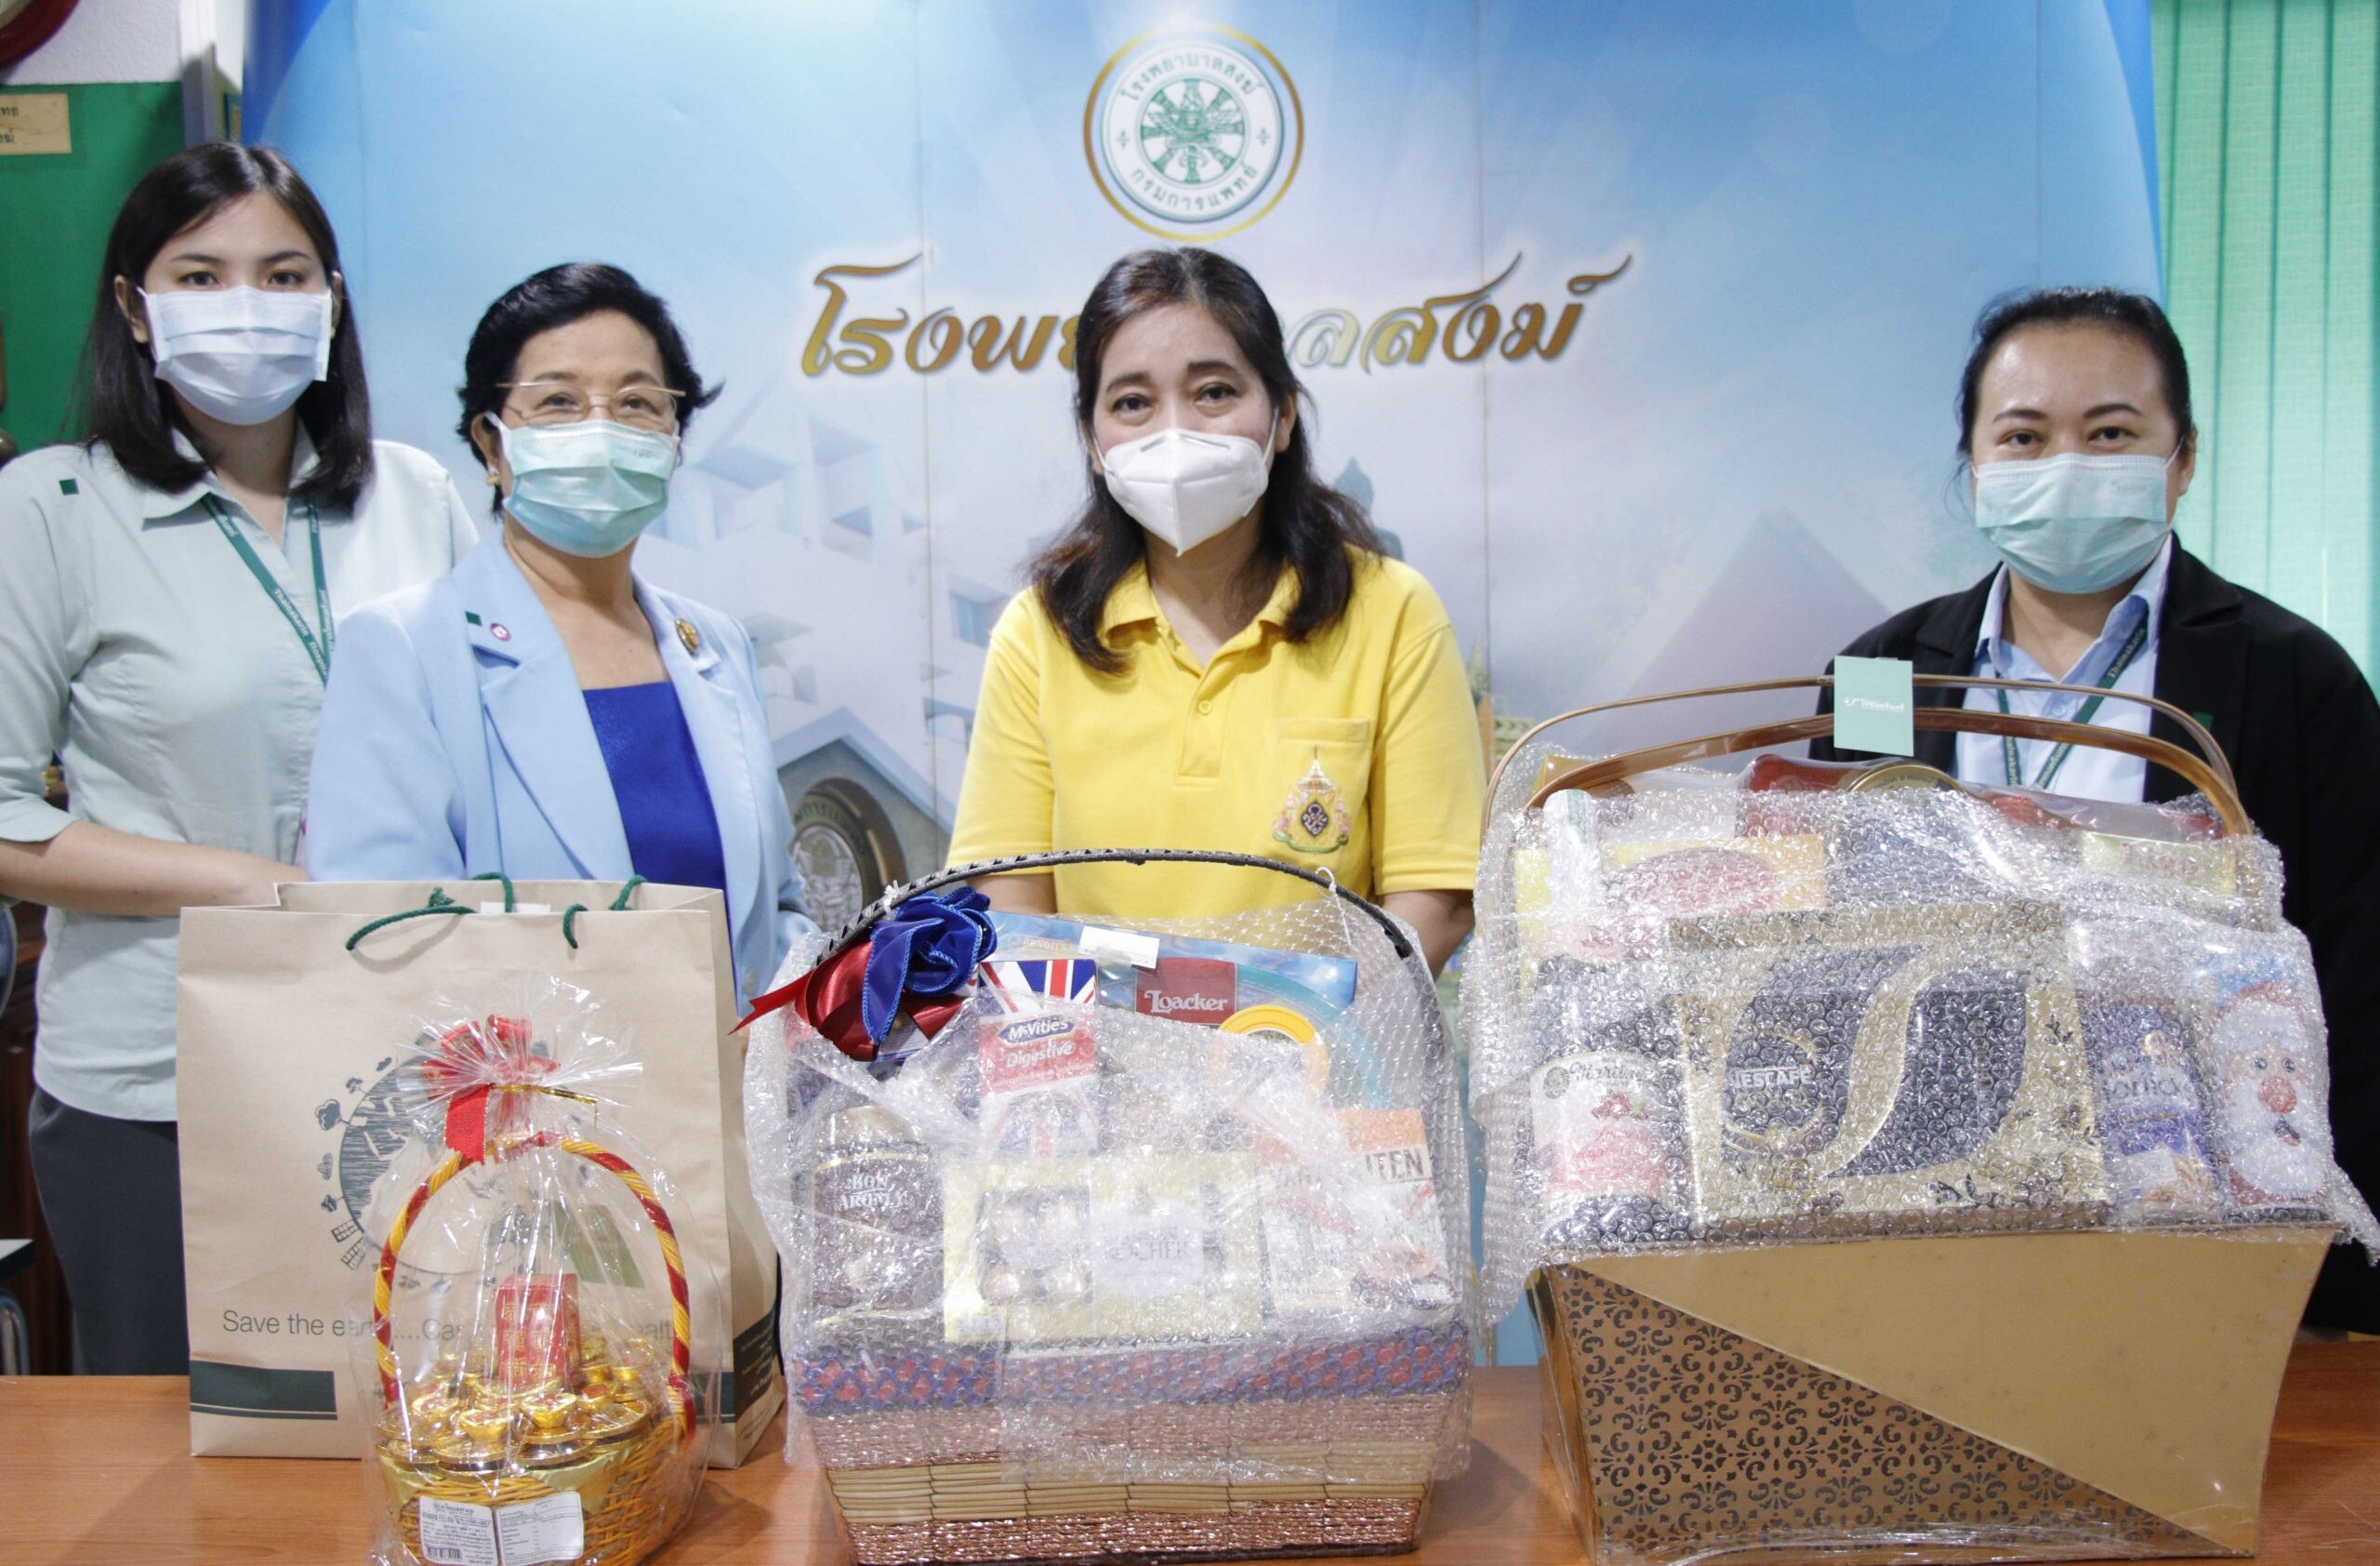 ภาพข่าว: โรงพยาบาลไทยนครินทร์ มอบเงินบริจาคและกระเช้าสุขภาพให้กับโรงพยาบาลสงฆ์